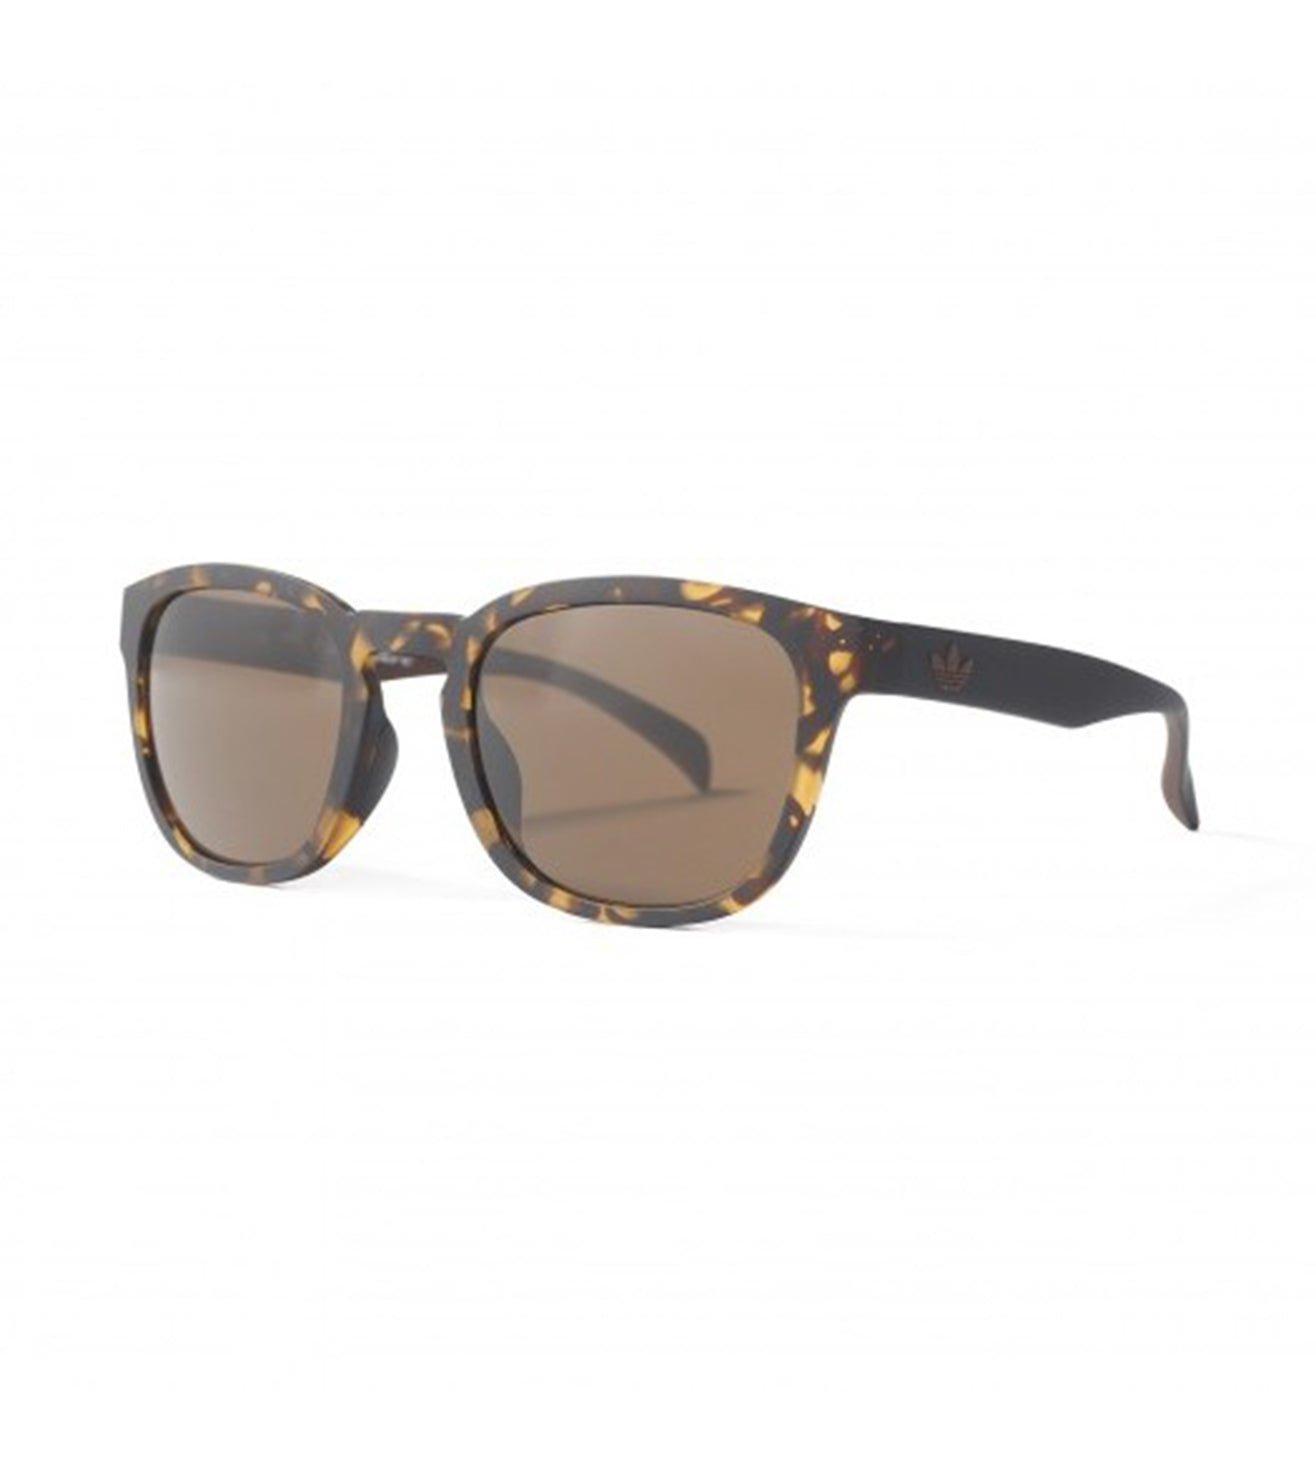 Adidas Originals Unisex Brown-Mirrored Square Sunglasses